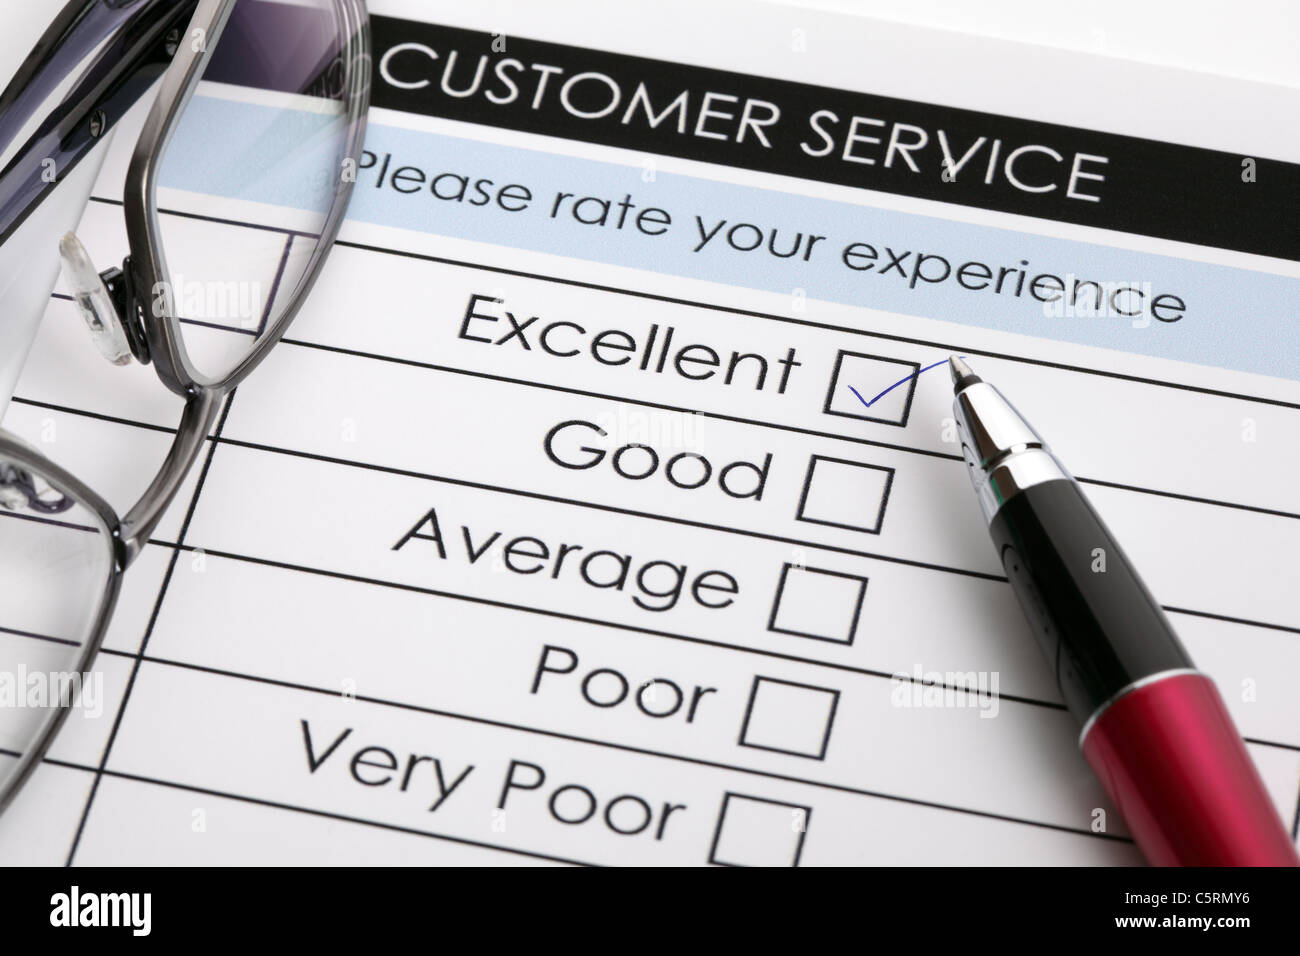 Customer service satisfaction survey Stock Photo